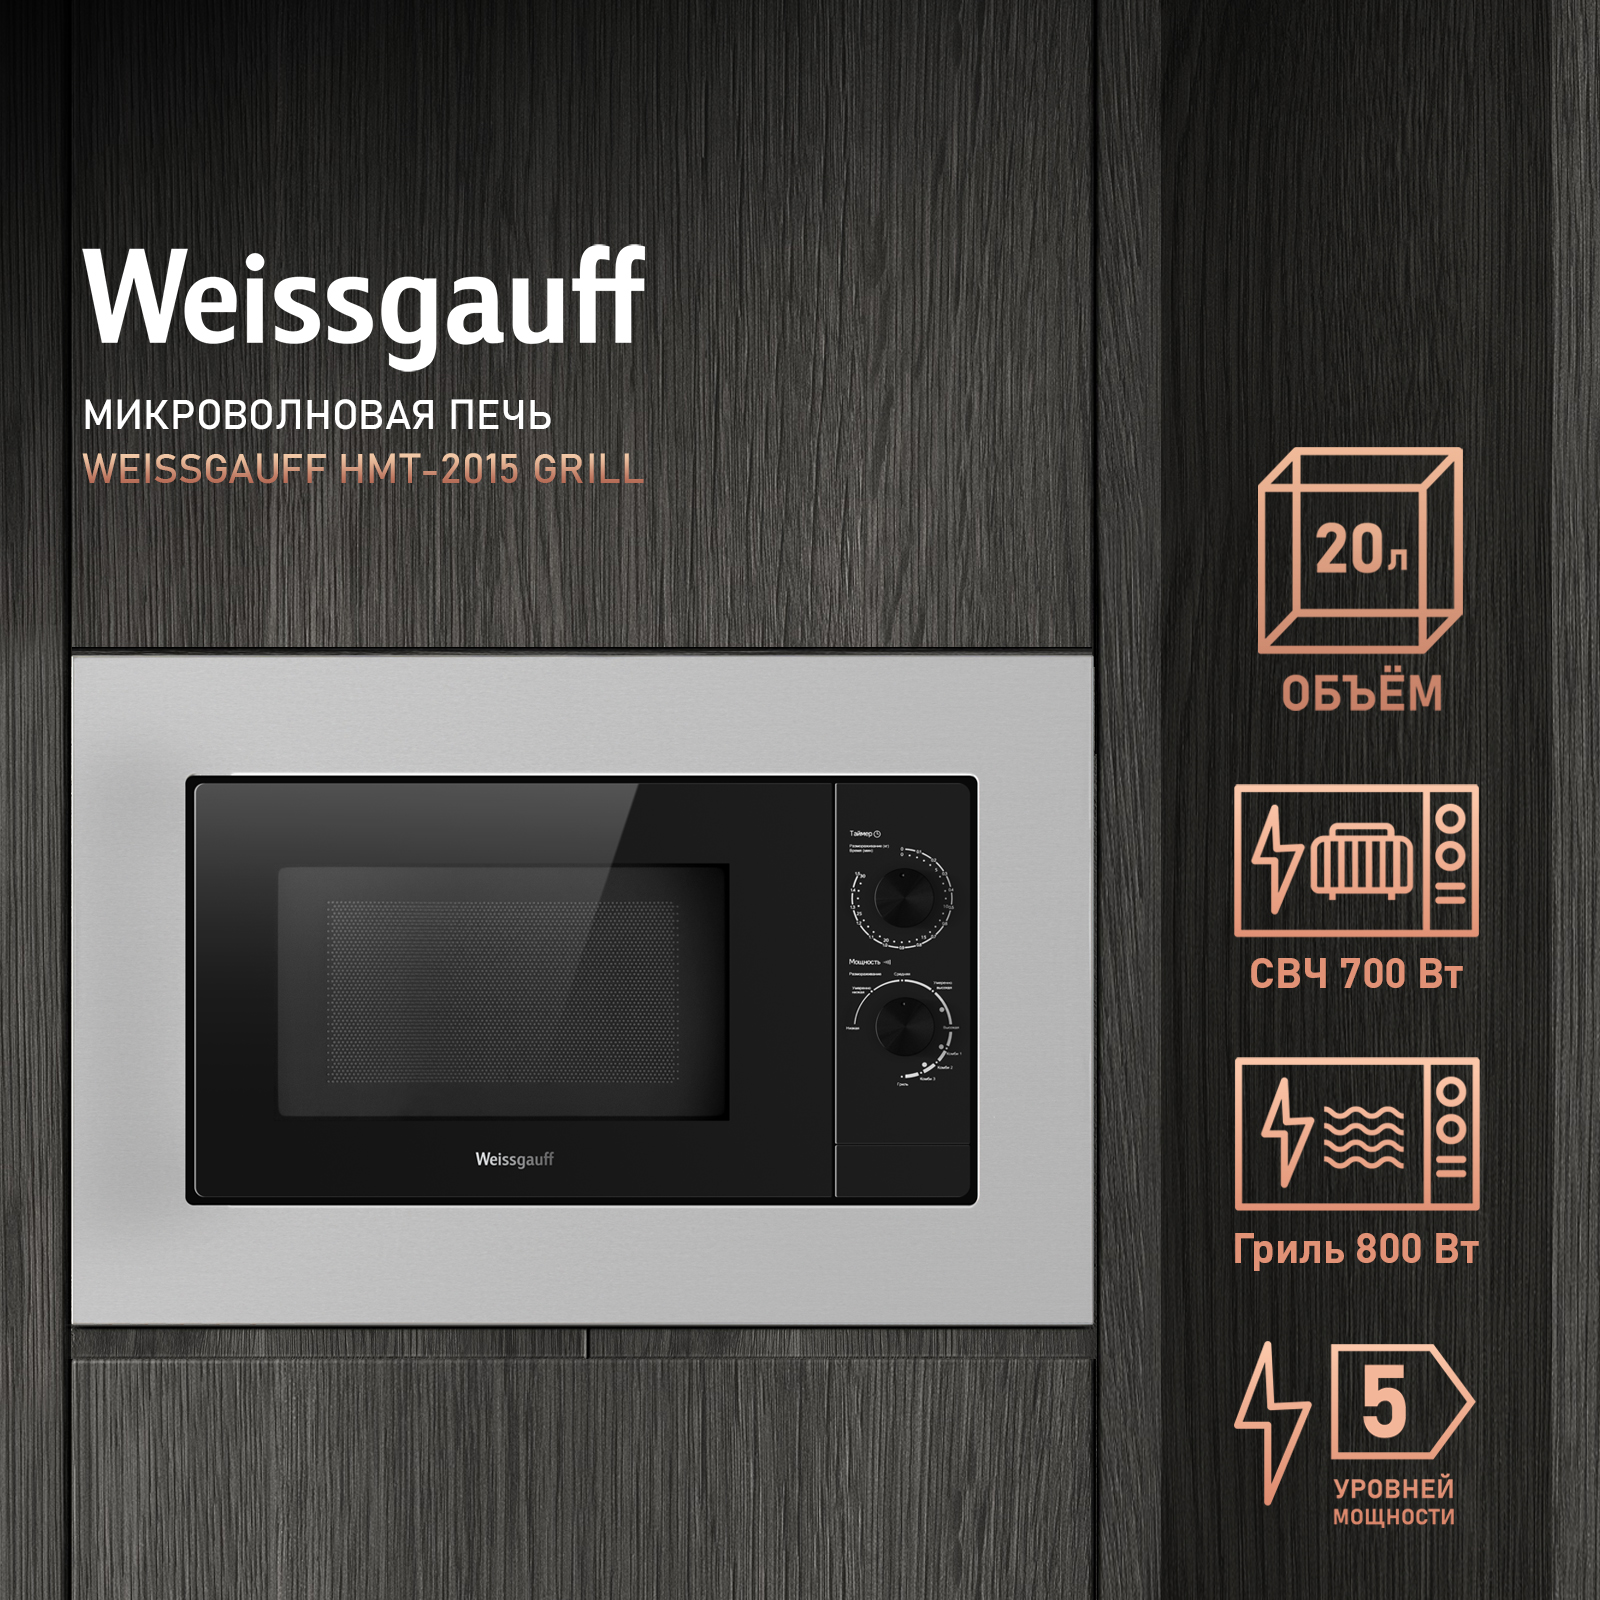 Встраиваемая микроволновая печь Weissgauff HMT-2015 Grill серебристая встраиваемая микроволновая печь weissgauff hmt 2015 grill серебристая